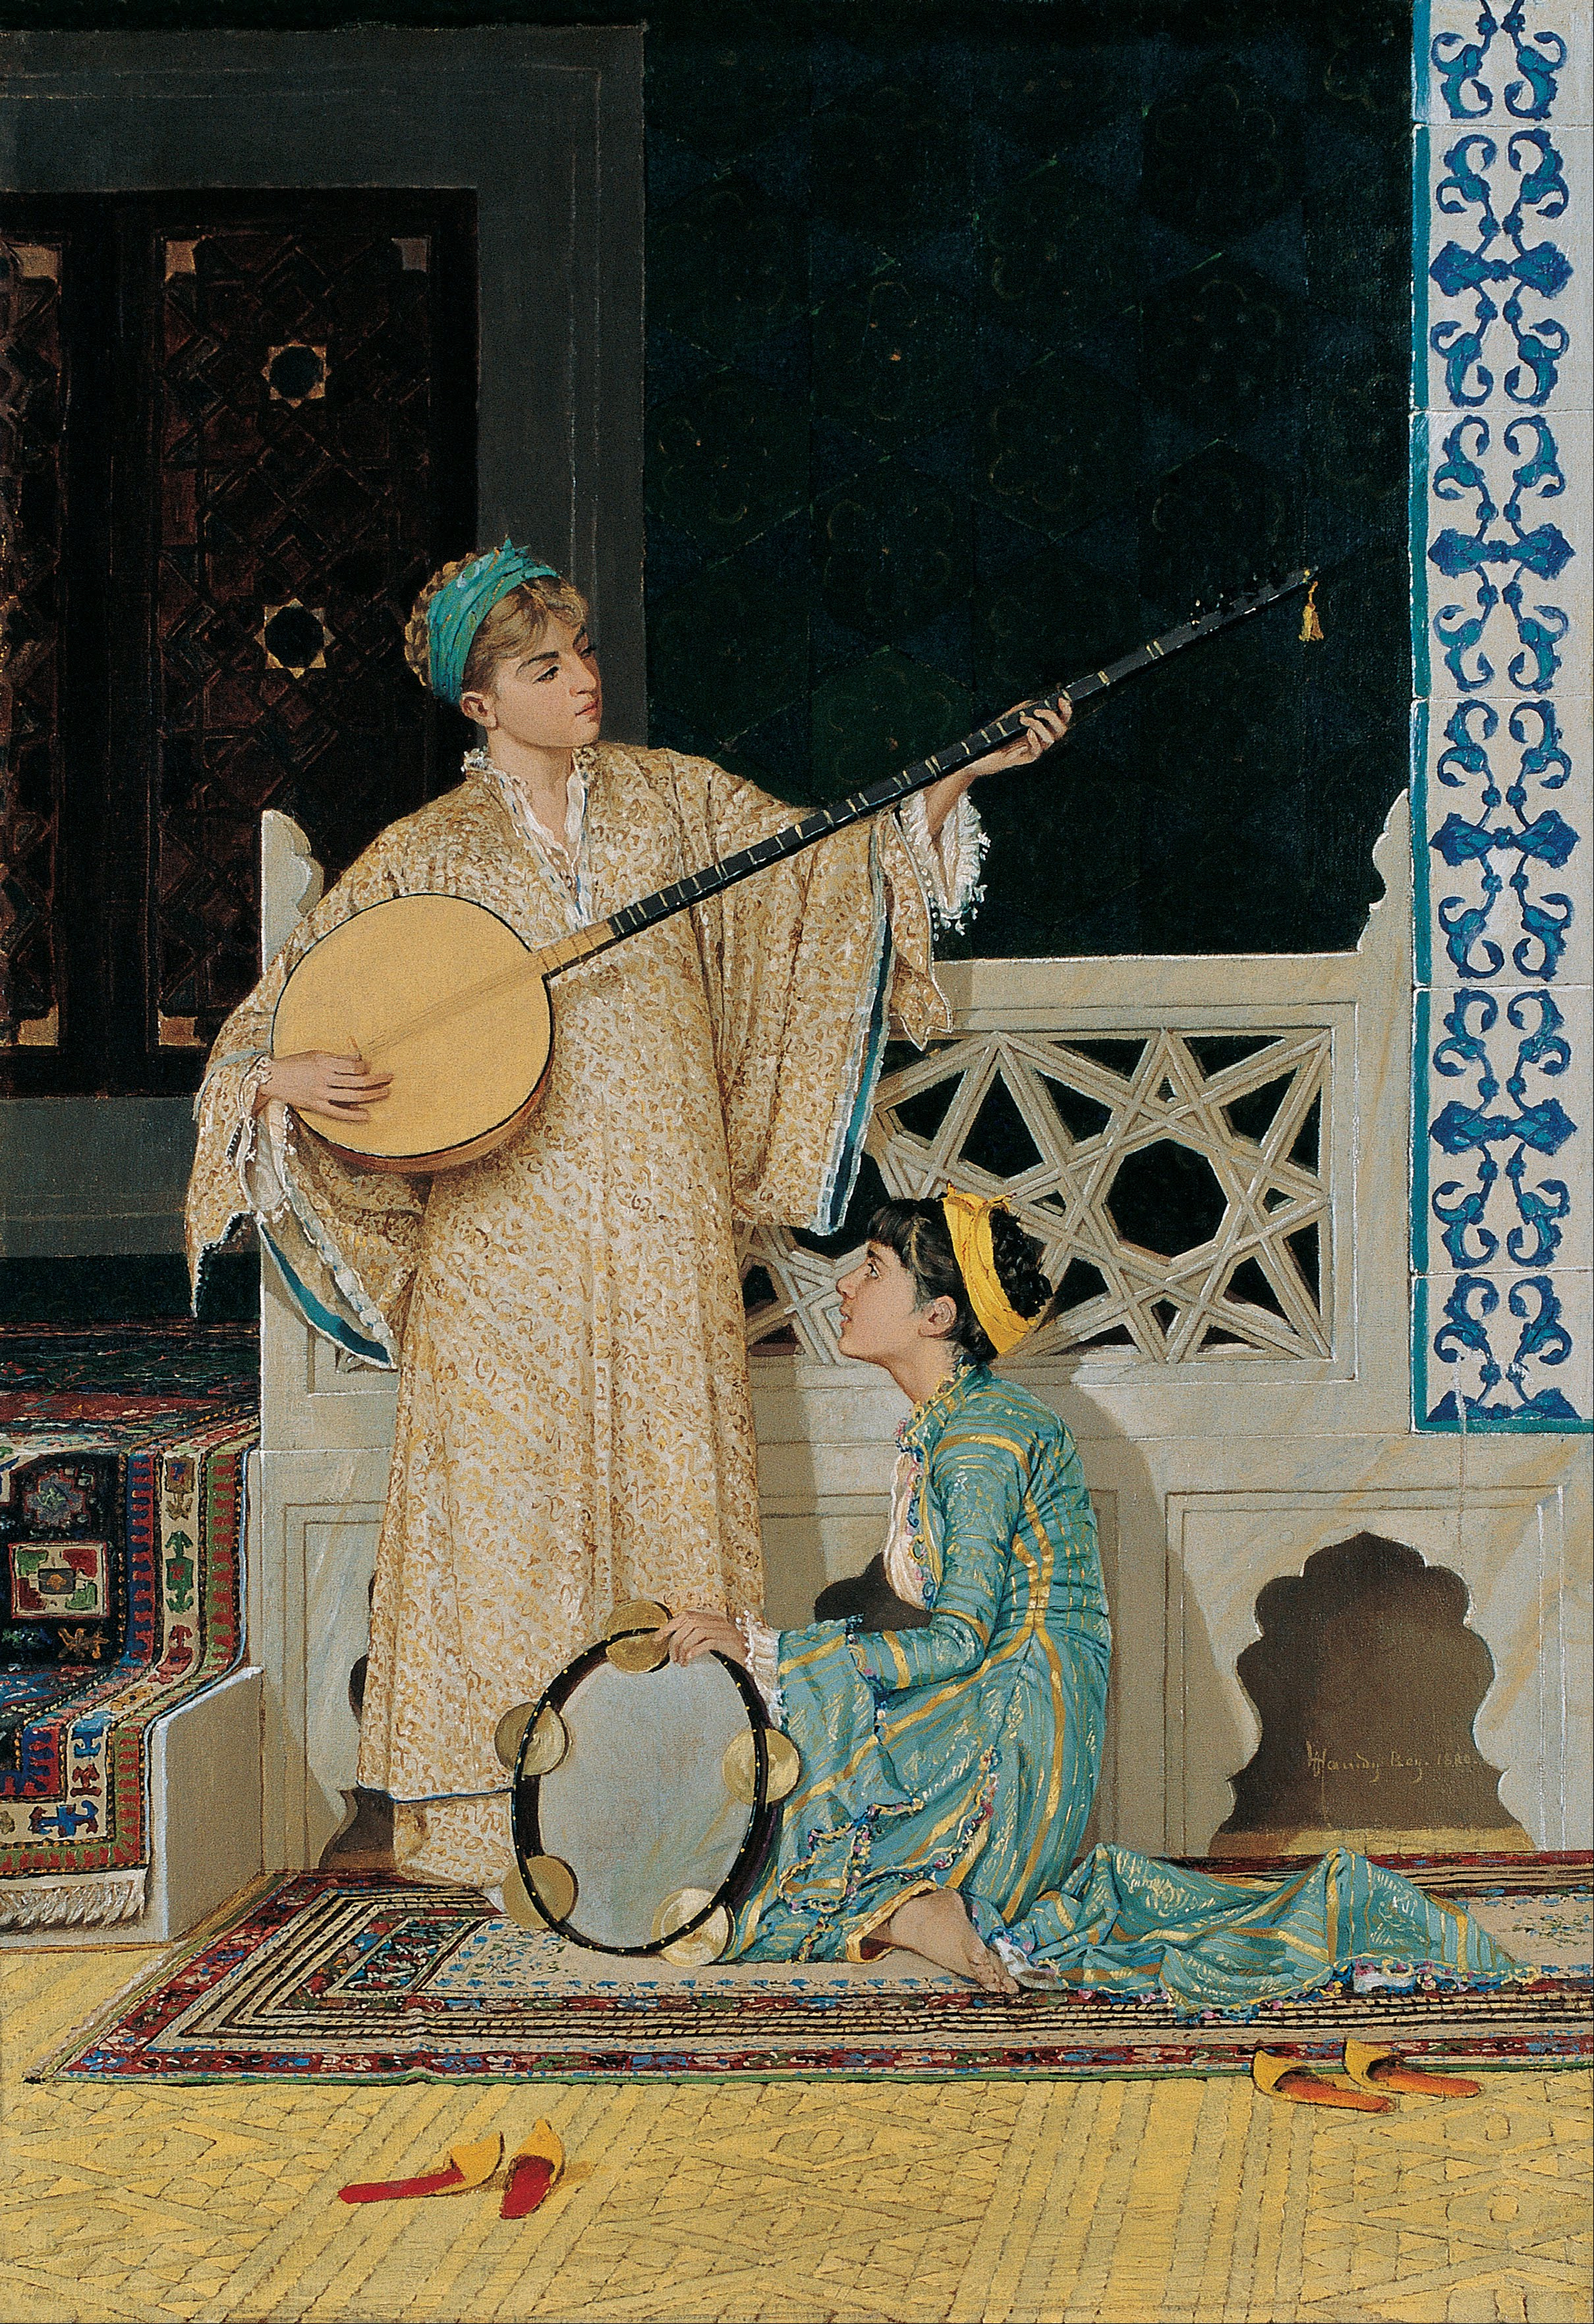 ２人の女流音楽家 by Osman Hamdi Bey - 19世紀後半 - 58 x 39 cm 